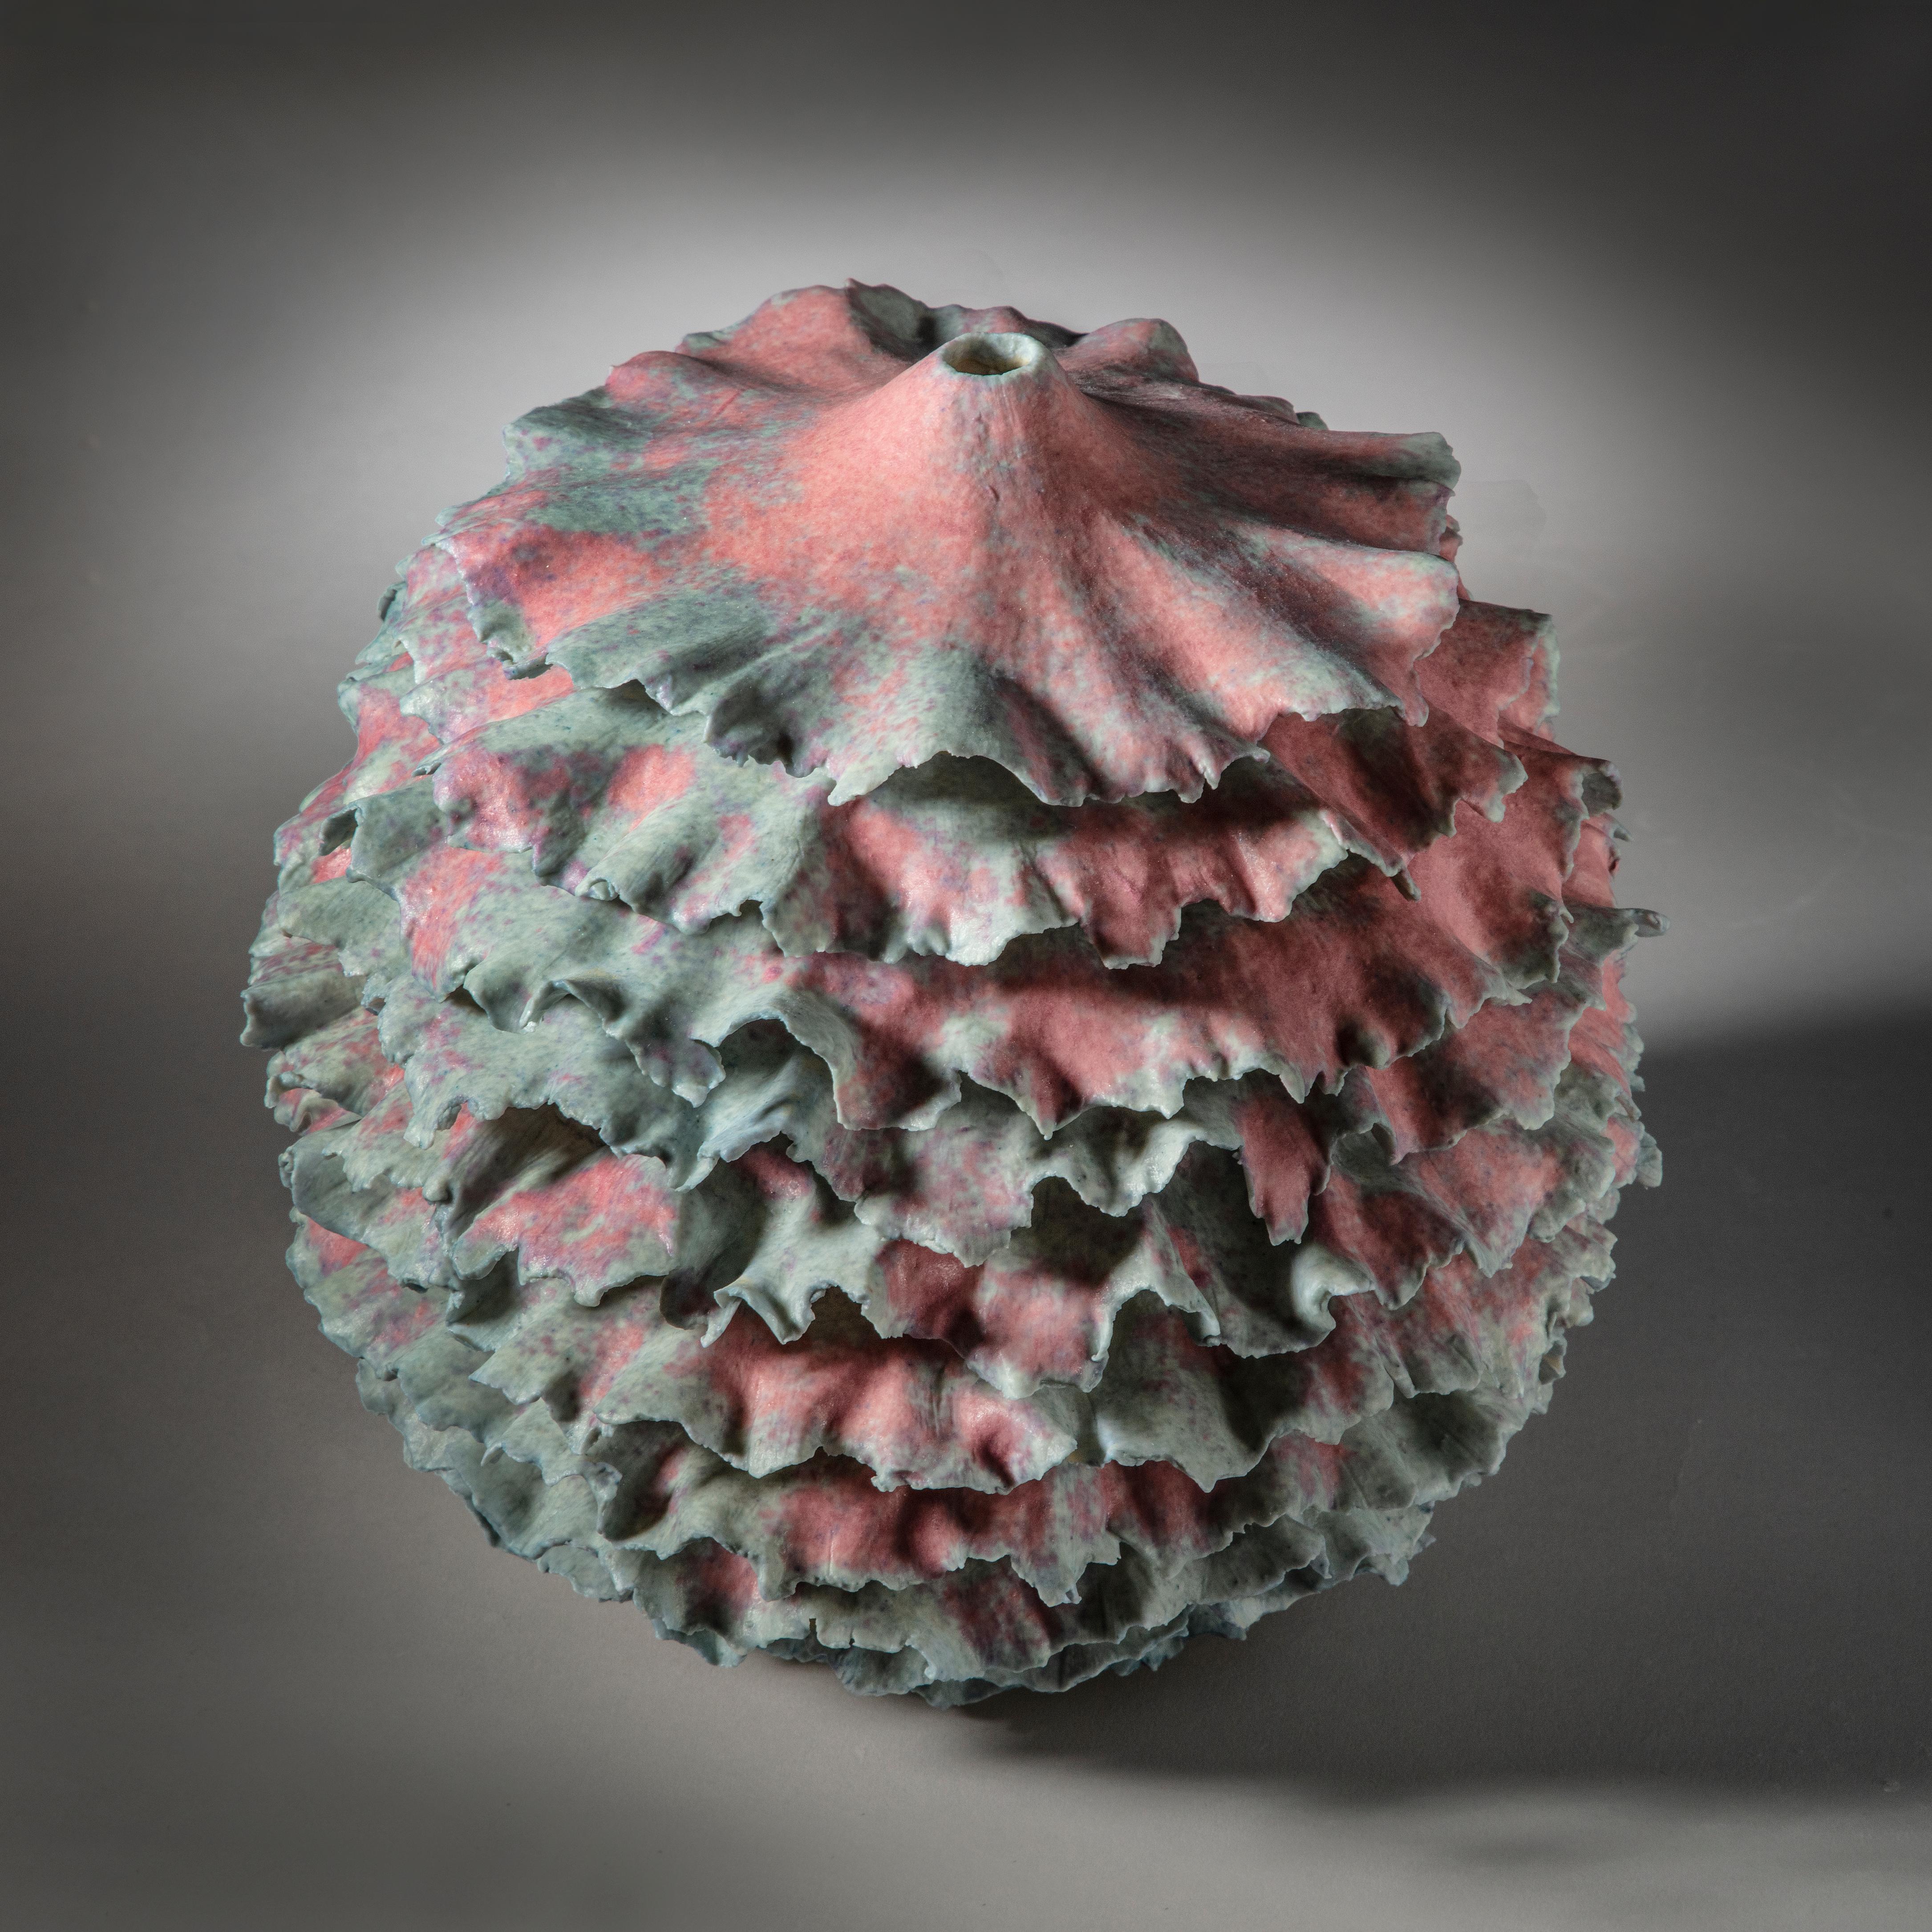 Pink Coral I, 2021, (Céramique, C. 7.5 in. h x 8.6 in. d, Object No. : 3875)

Sandra Davolio vit à Copenhague, au Danemark, depuis 1974. Elle est née en Italie en 1951. Elle a obtenu son diplôme de la célèbre École danoise de design en 1985 et a